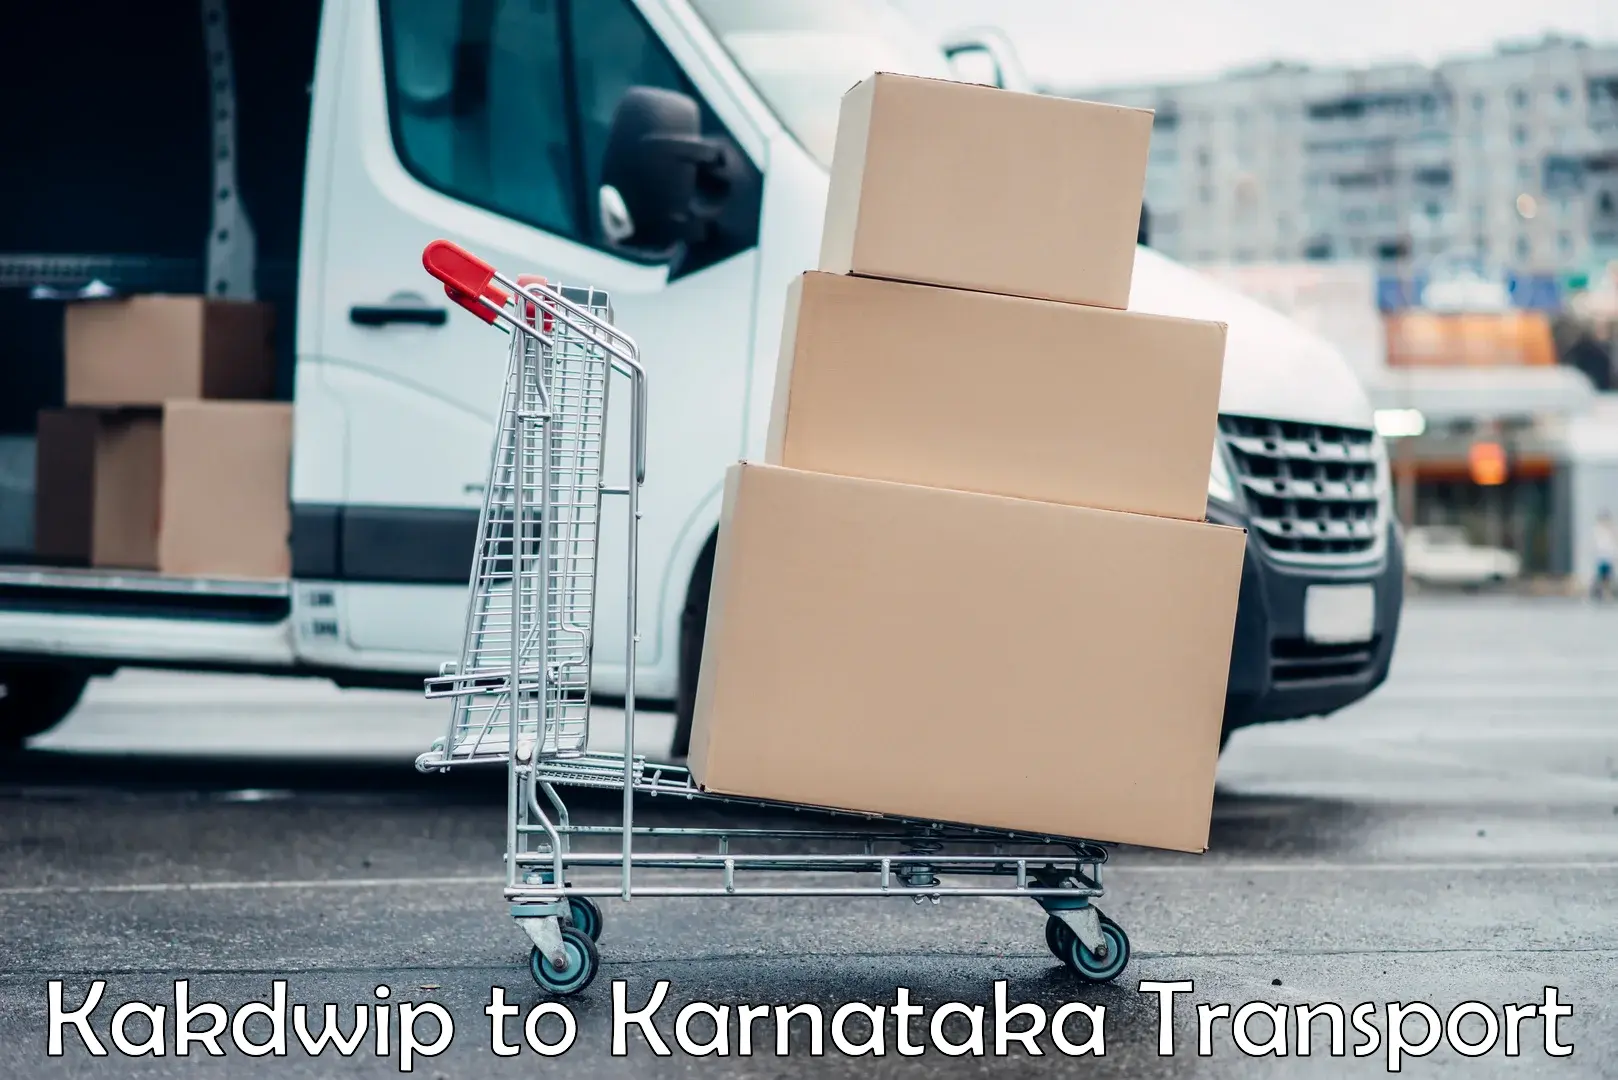 Online transport service Kakdwip to Karnataka